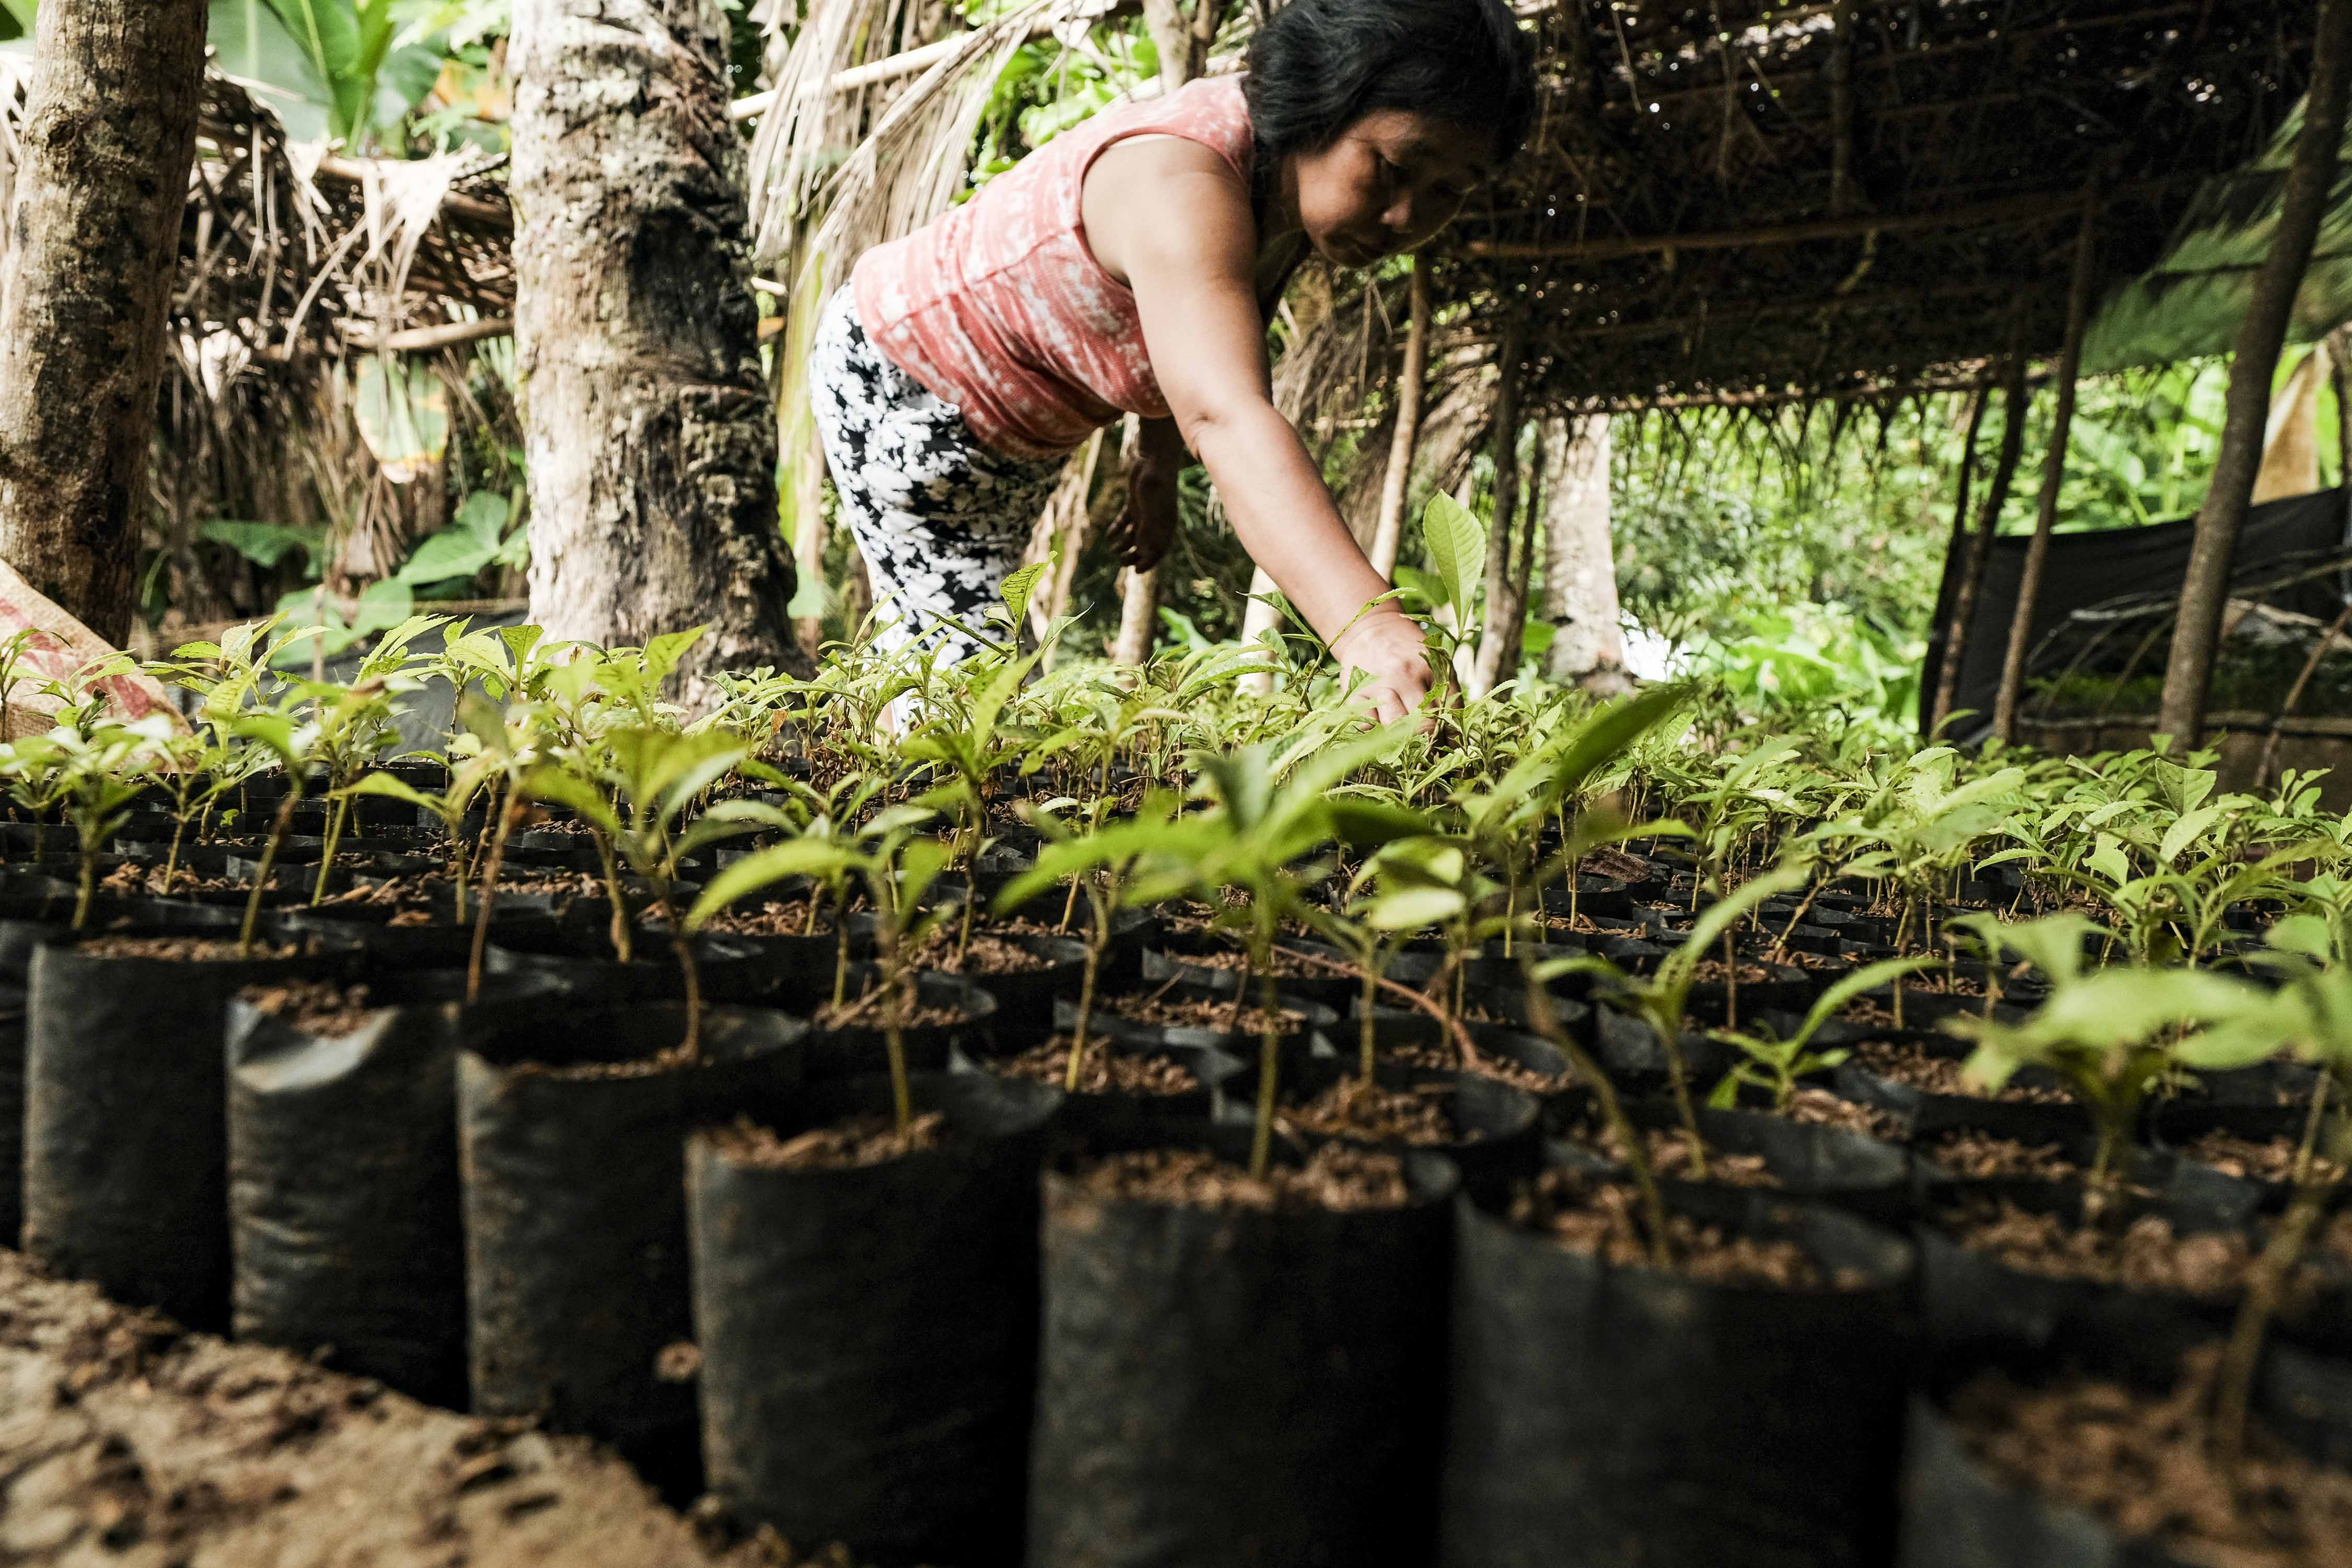 Women tending to seedlings